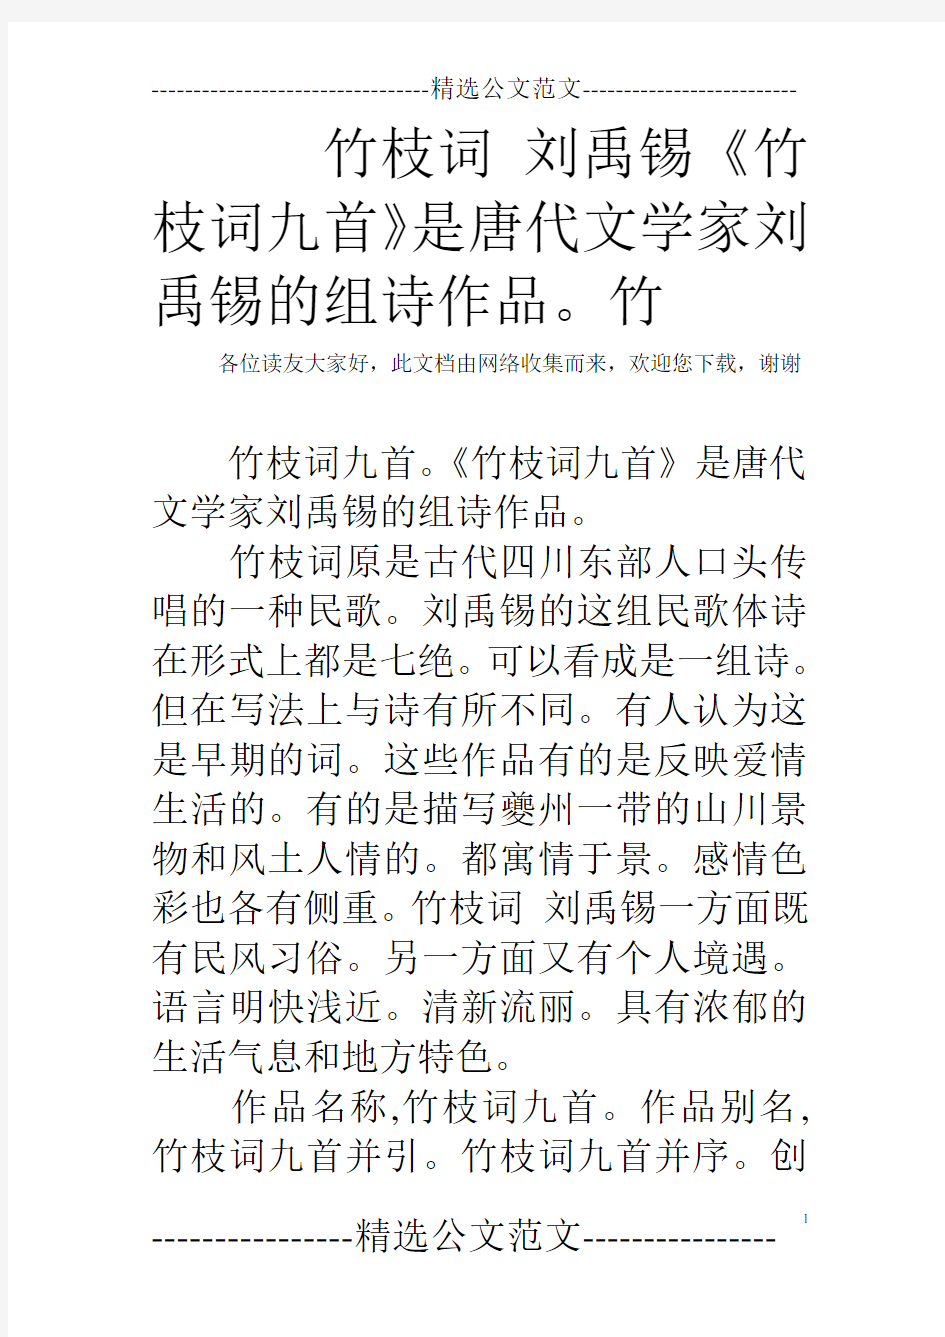 竹枝词 刘禹锡《竹枝词九首》是唐代文学家刘禹锡的组诗作品。竹